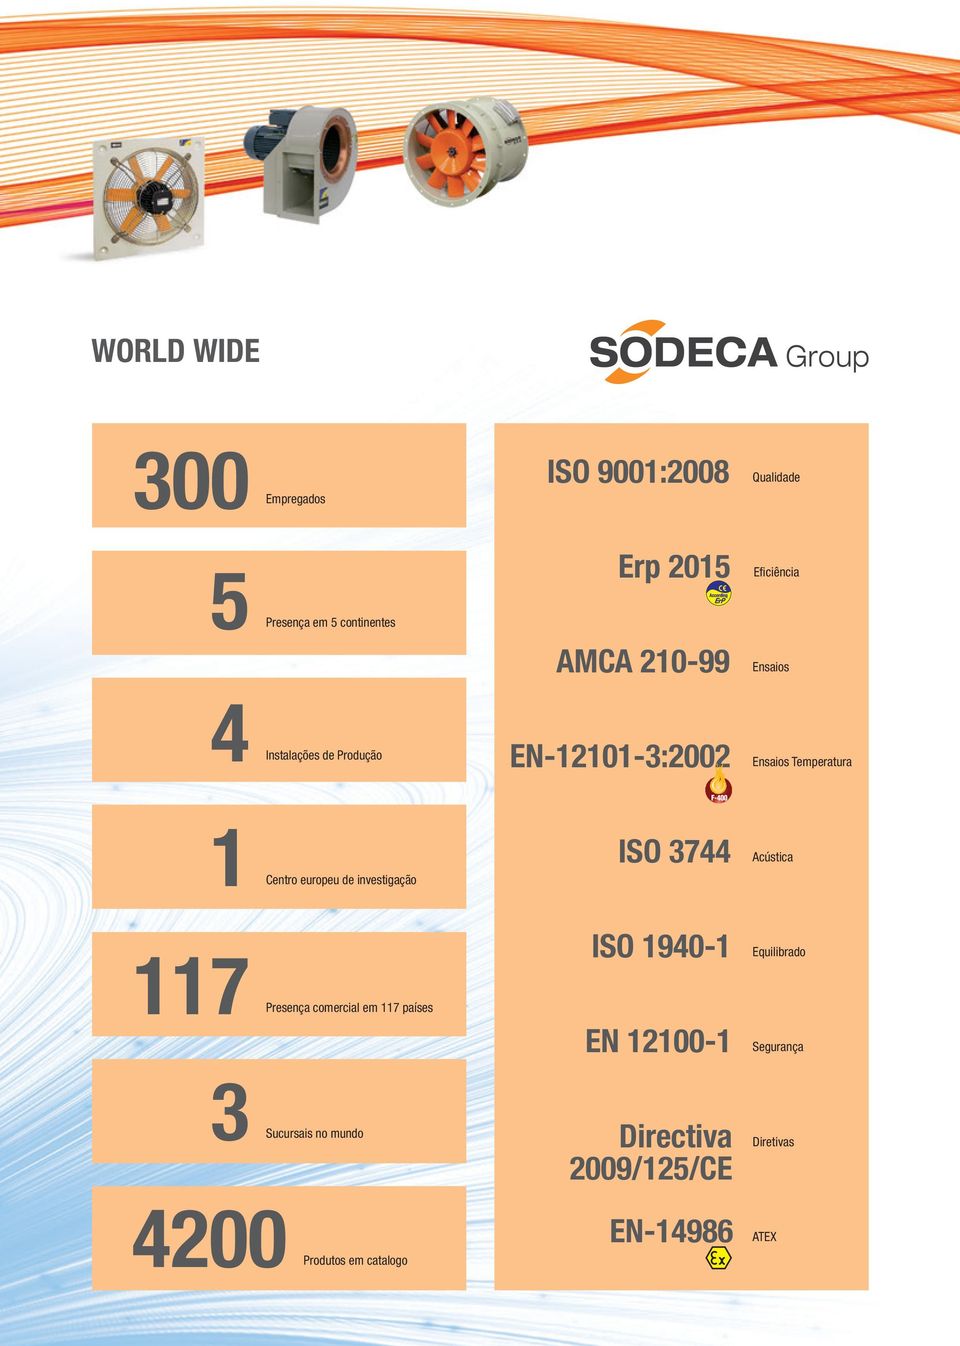 investigação F-400 ISO 3744 Acústica 117 Presença comercial em 117 países 3 Sucursais no mundo 4200